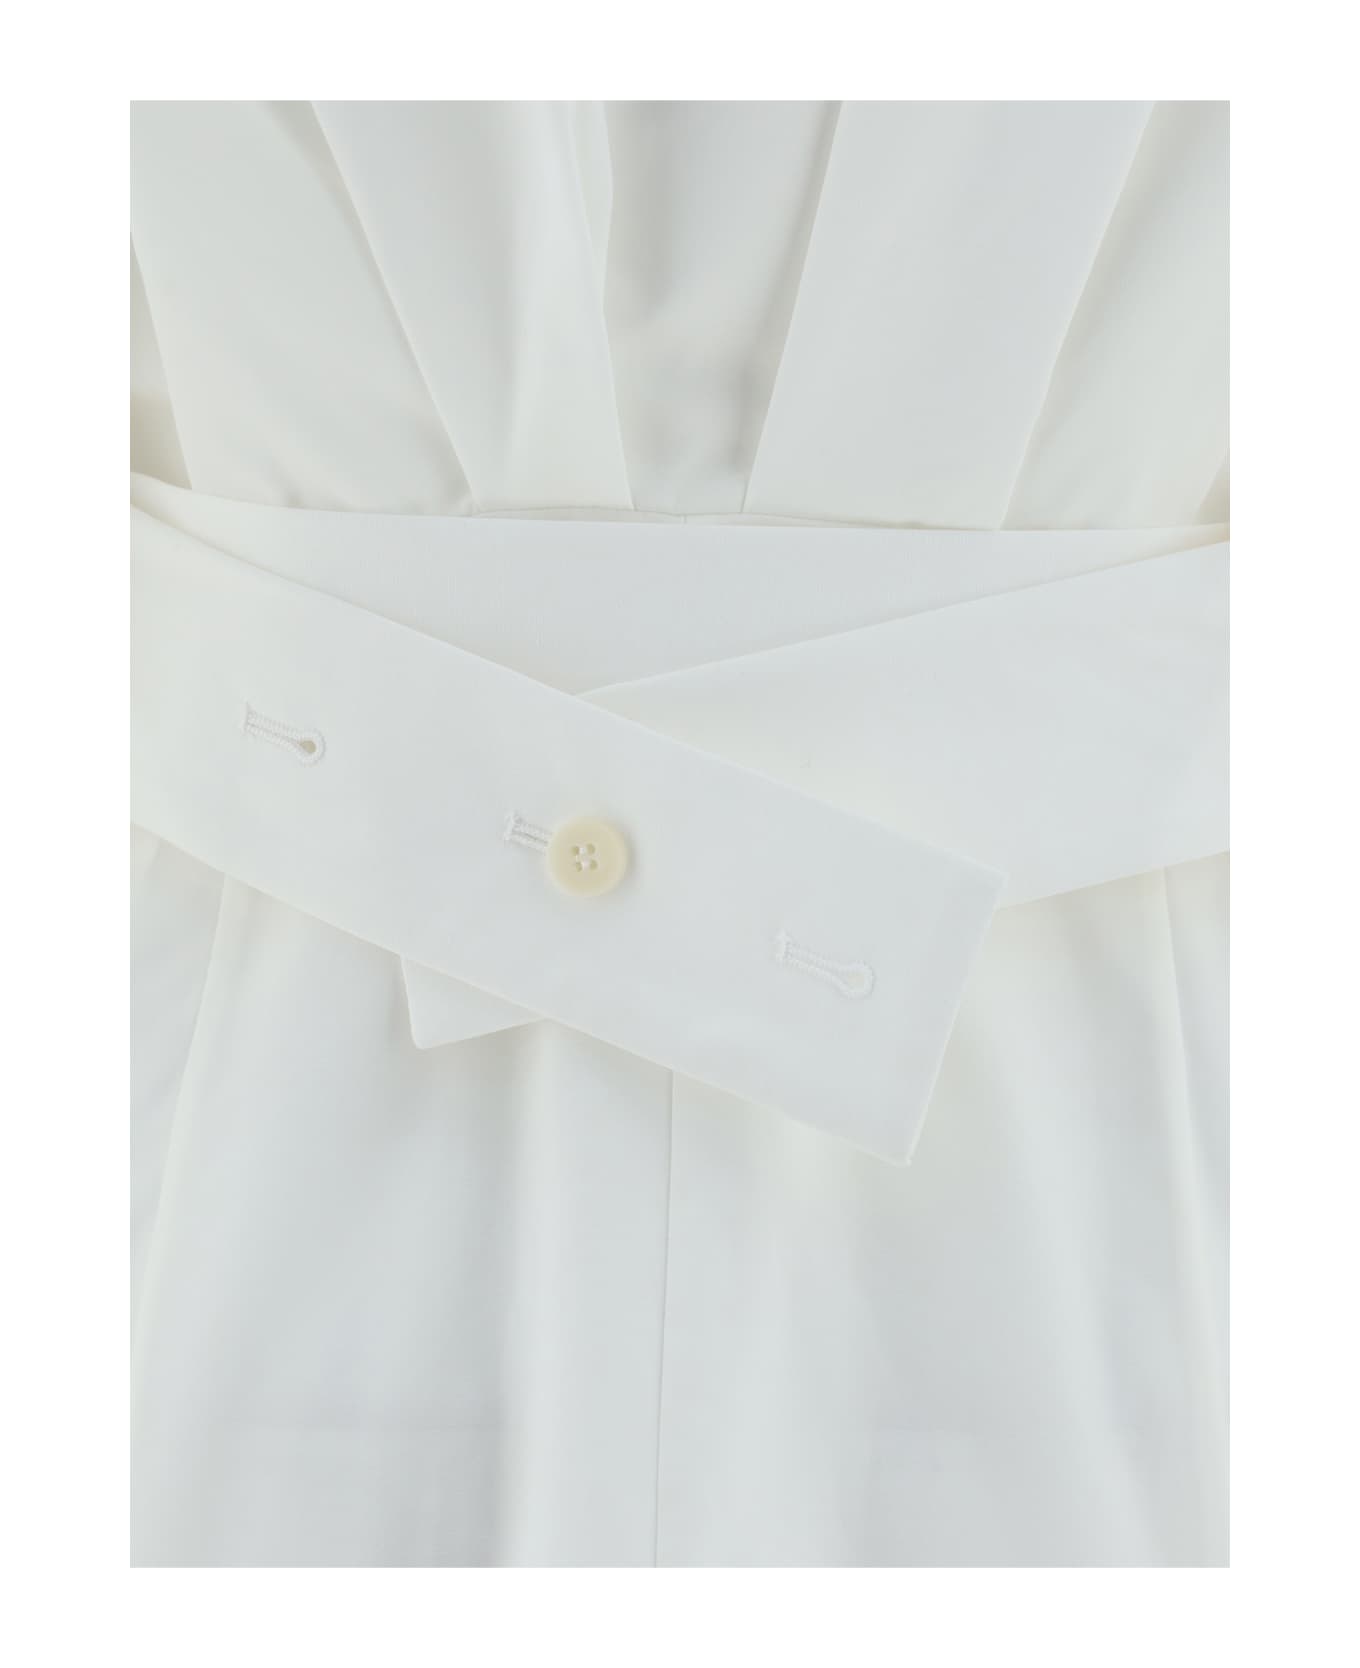 Jacquemus La Mini Robe Chemisier Dress - White